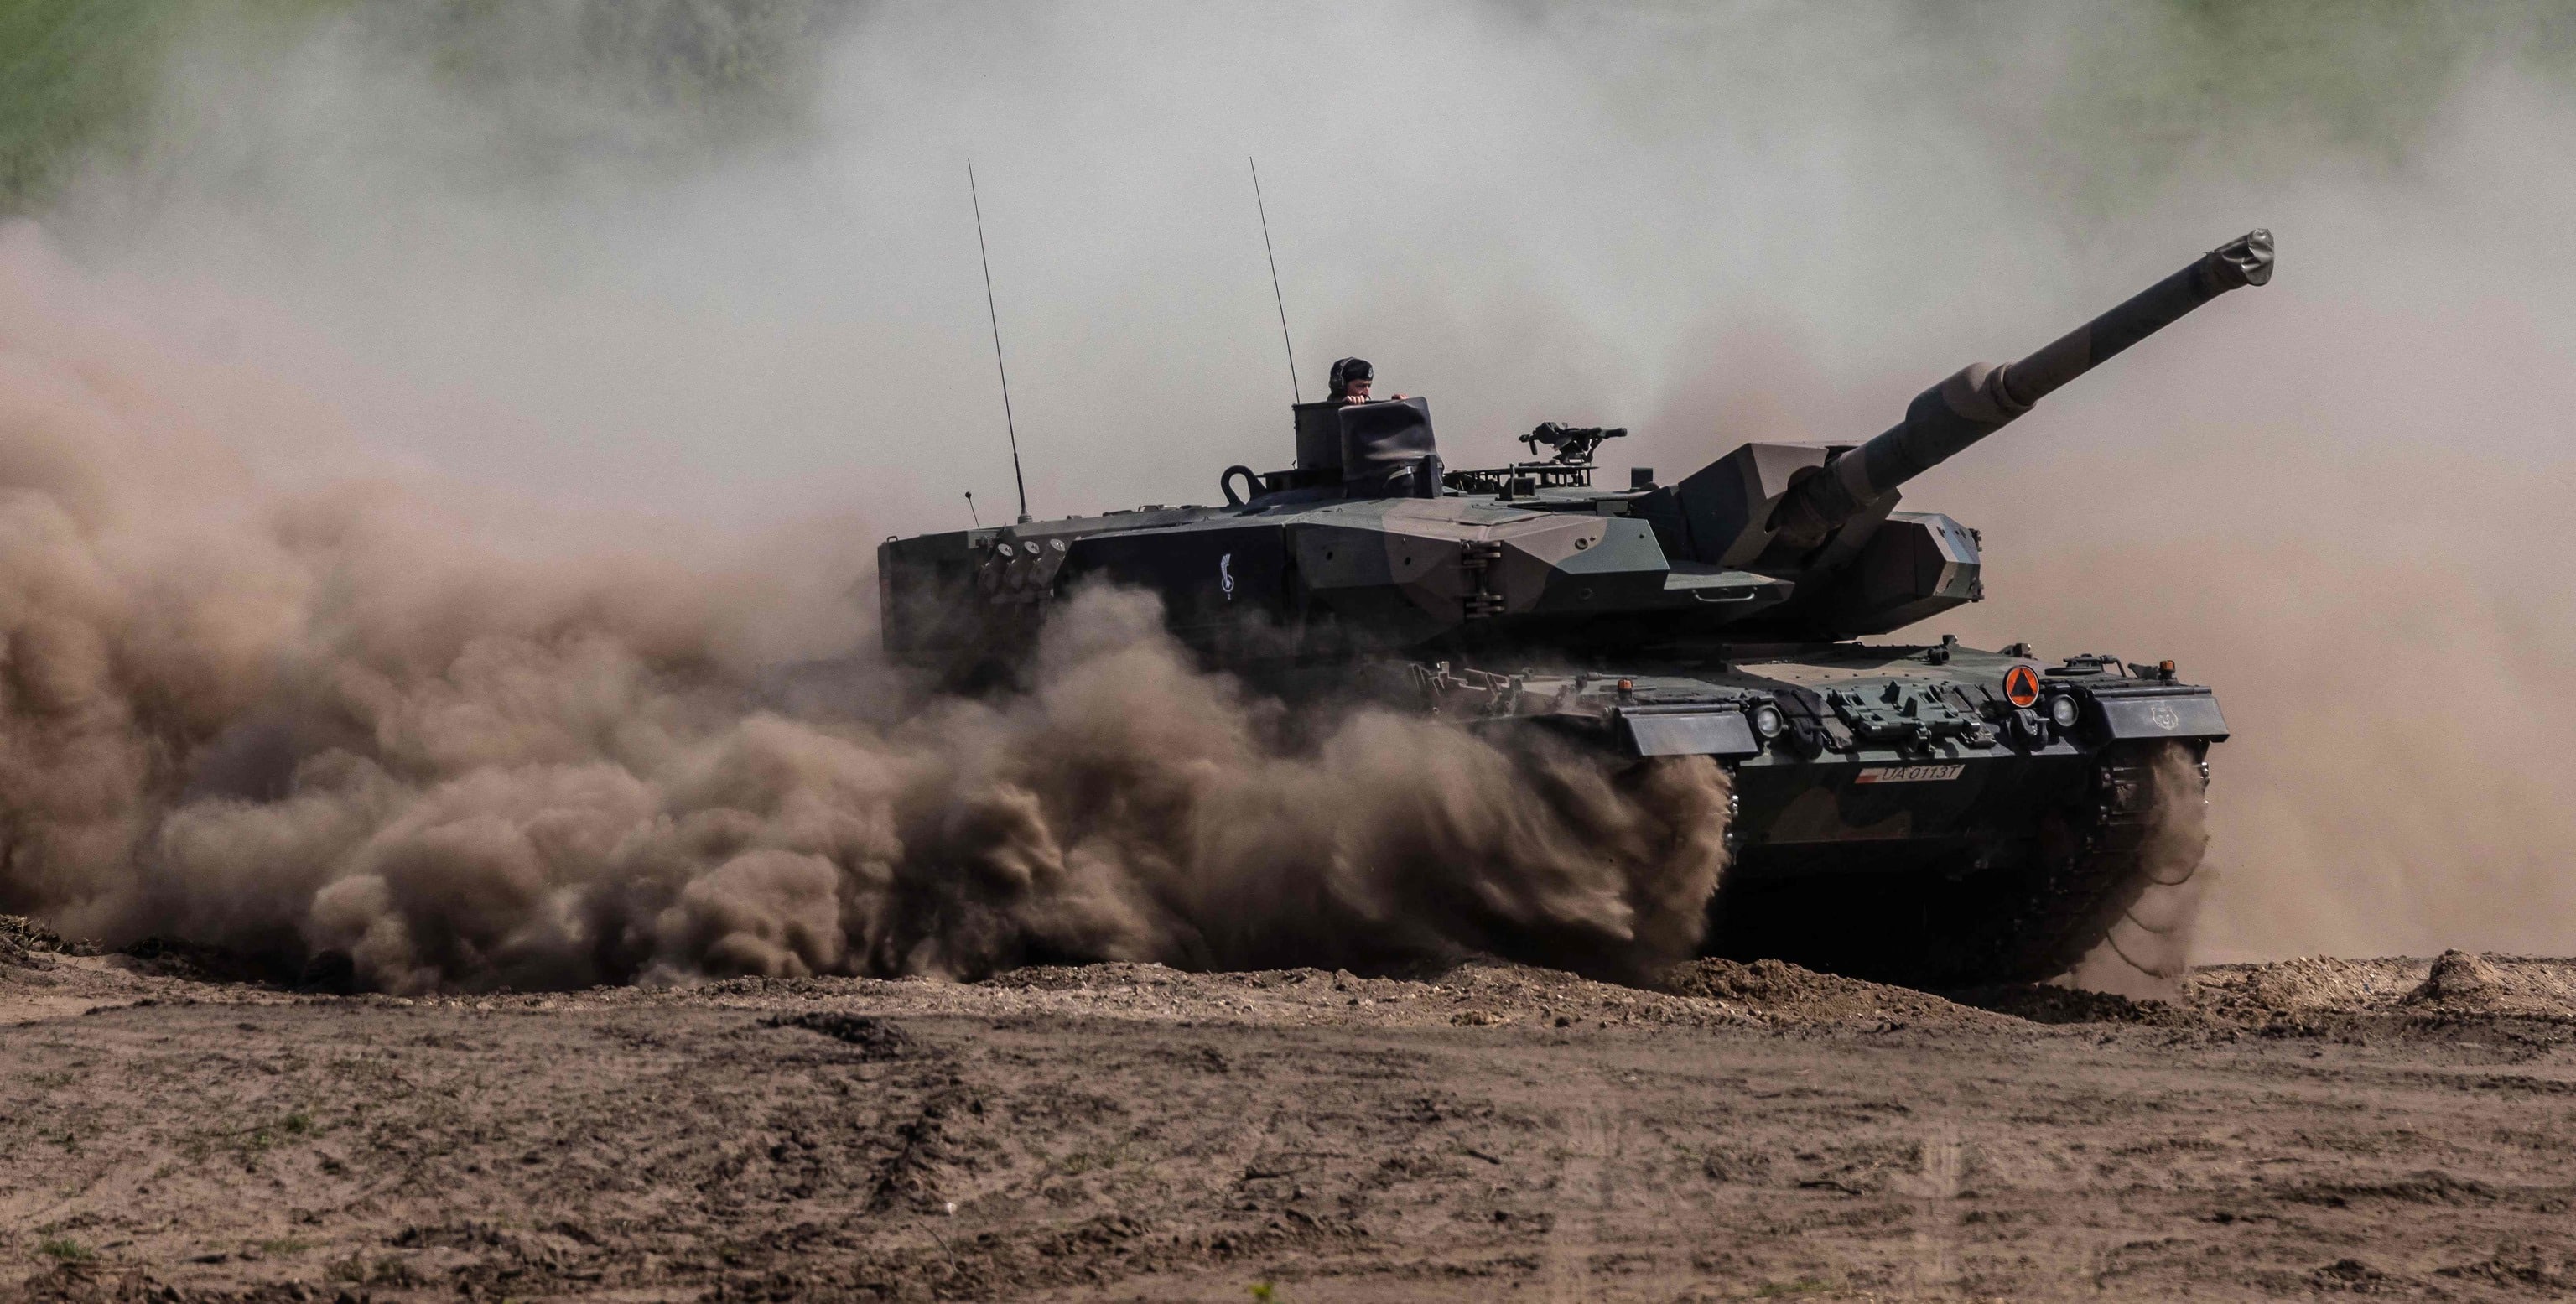 OTAN tanques de guerra Ucrania